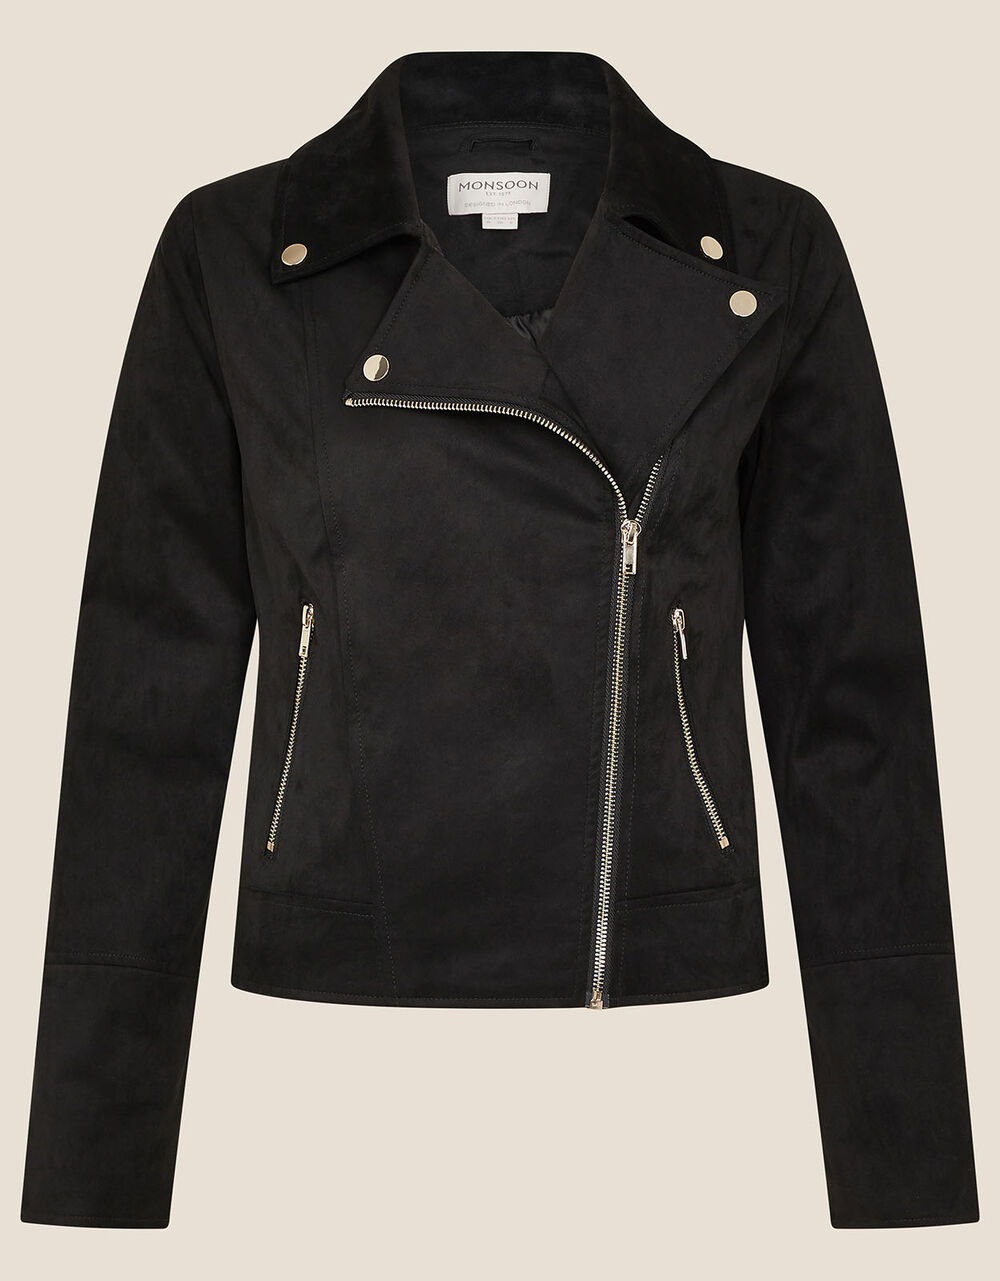 Stacey Suedette Biker Jacket Black | Women's Jackets | Monsoon UK.